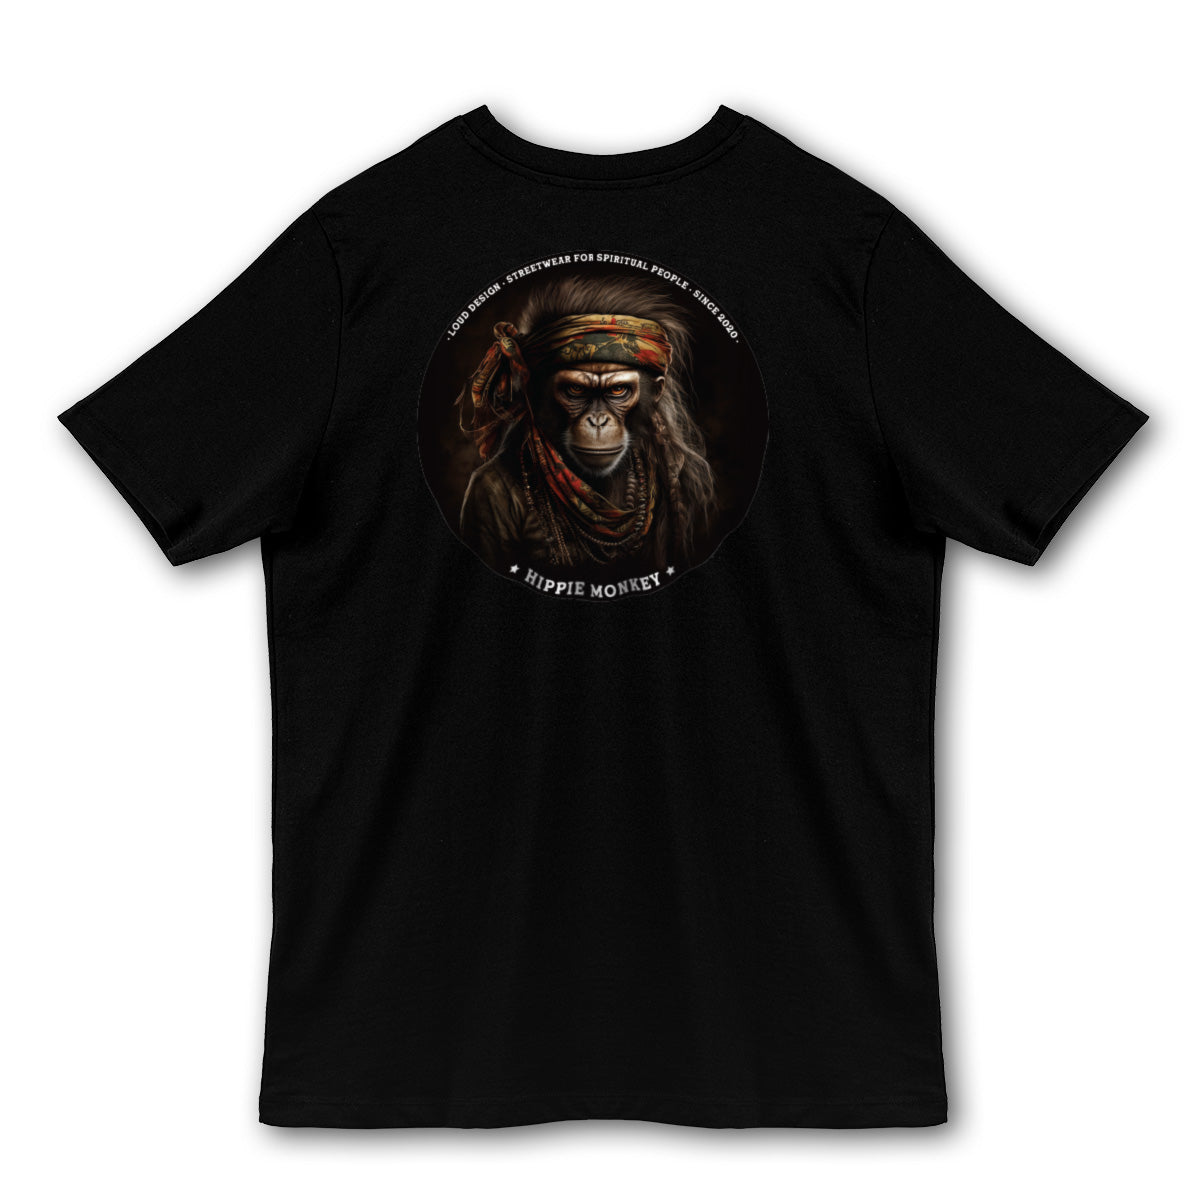 Unisex T-shirt "Hippie Monkey"